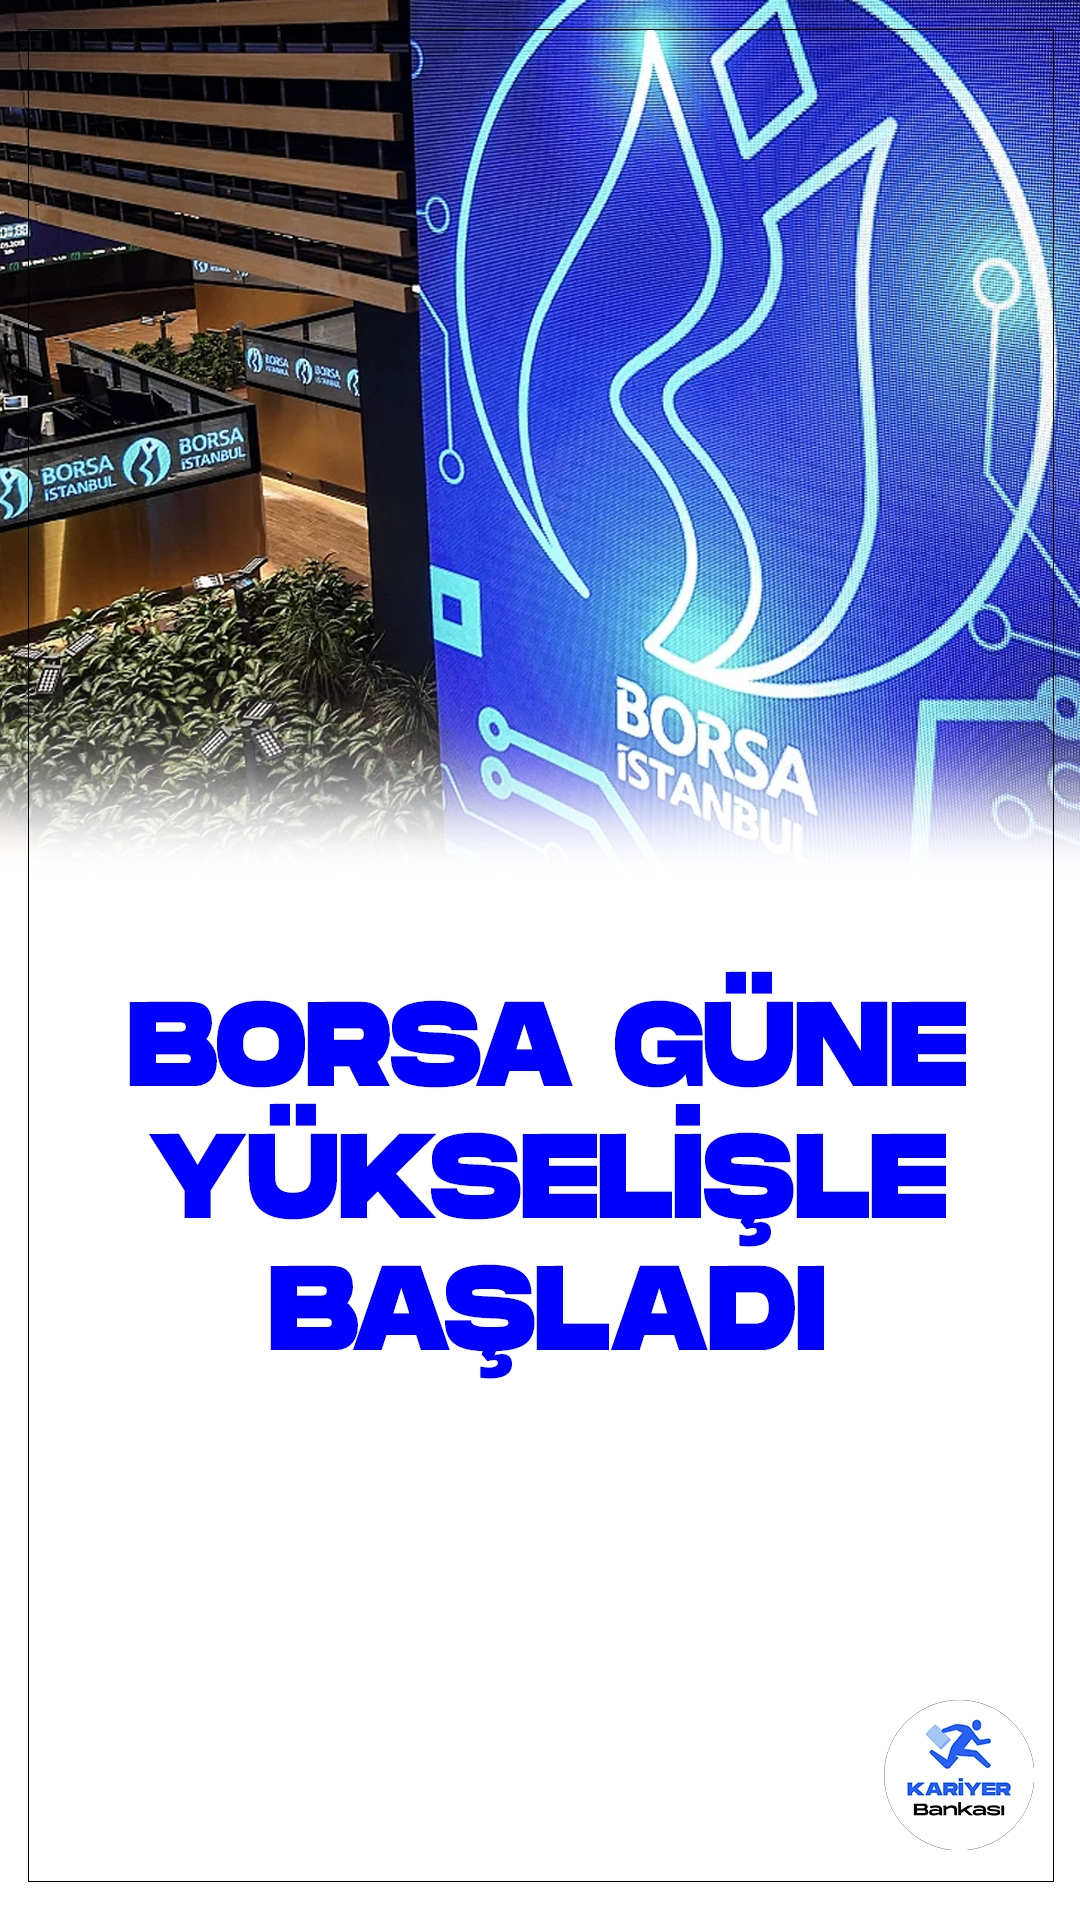 Borsa İstanbul'da Güne Yükselişle Başlangıç.Borsa İstanbul'da BIST 100 endeksi, güne yüzde 0,30 artışla 8.834,01 puandan başladı.